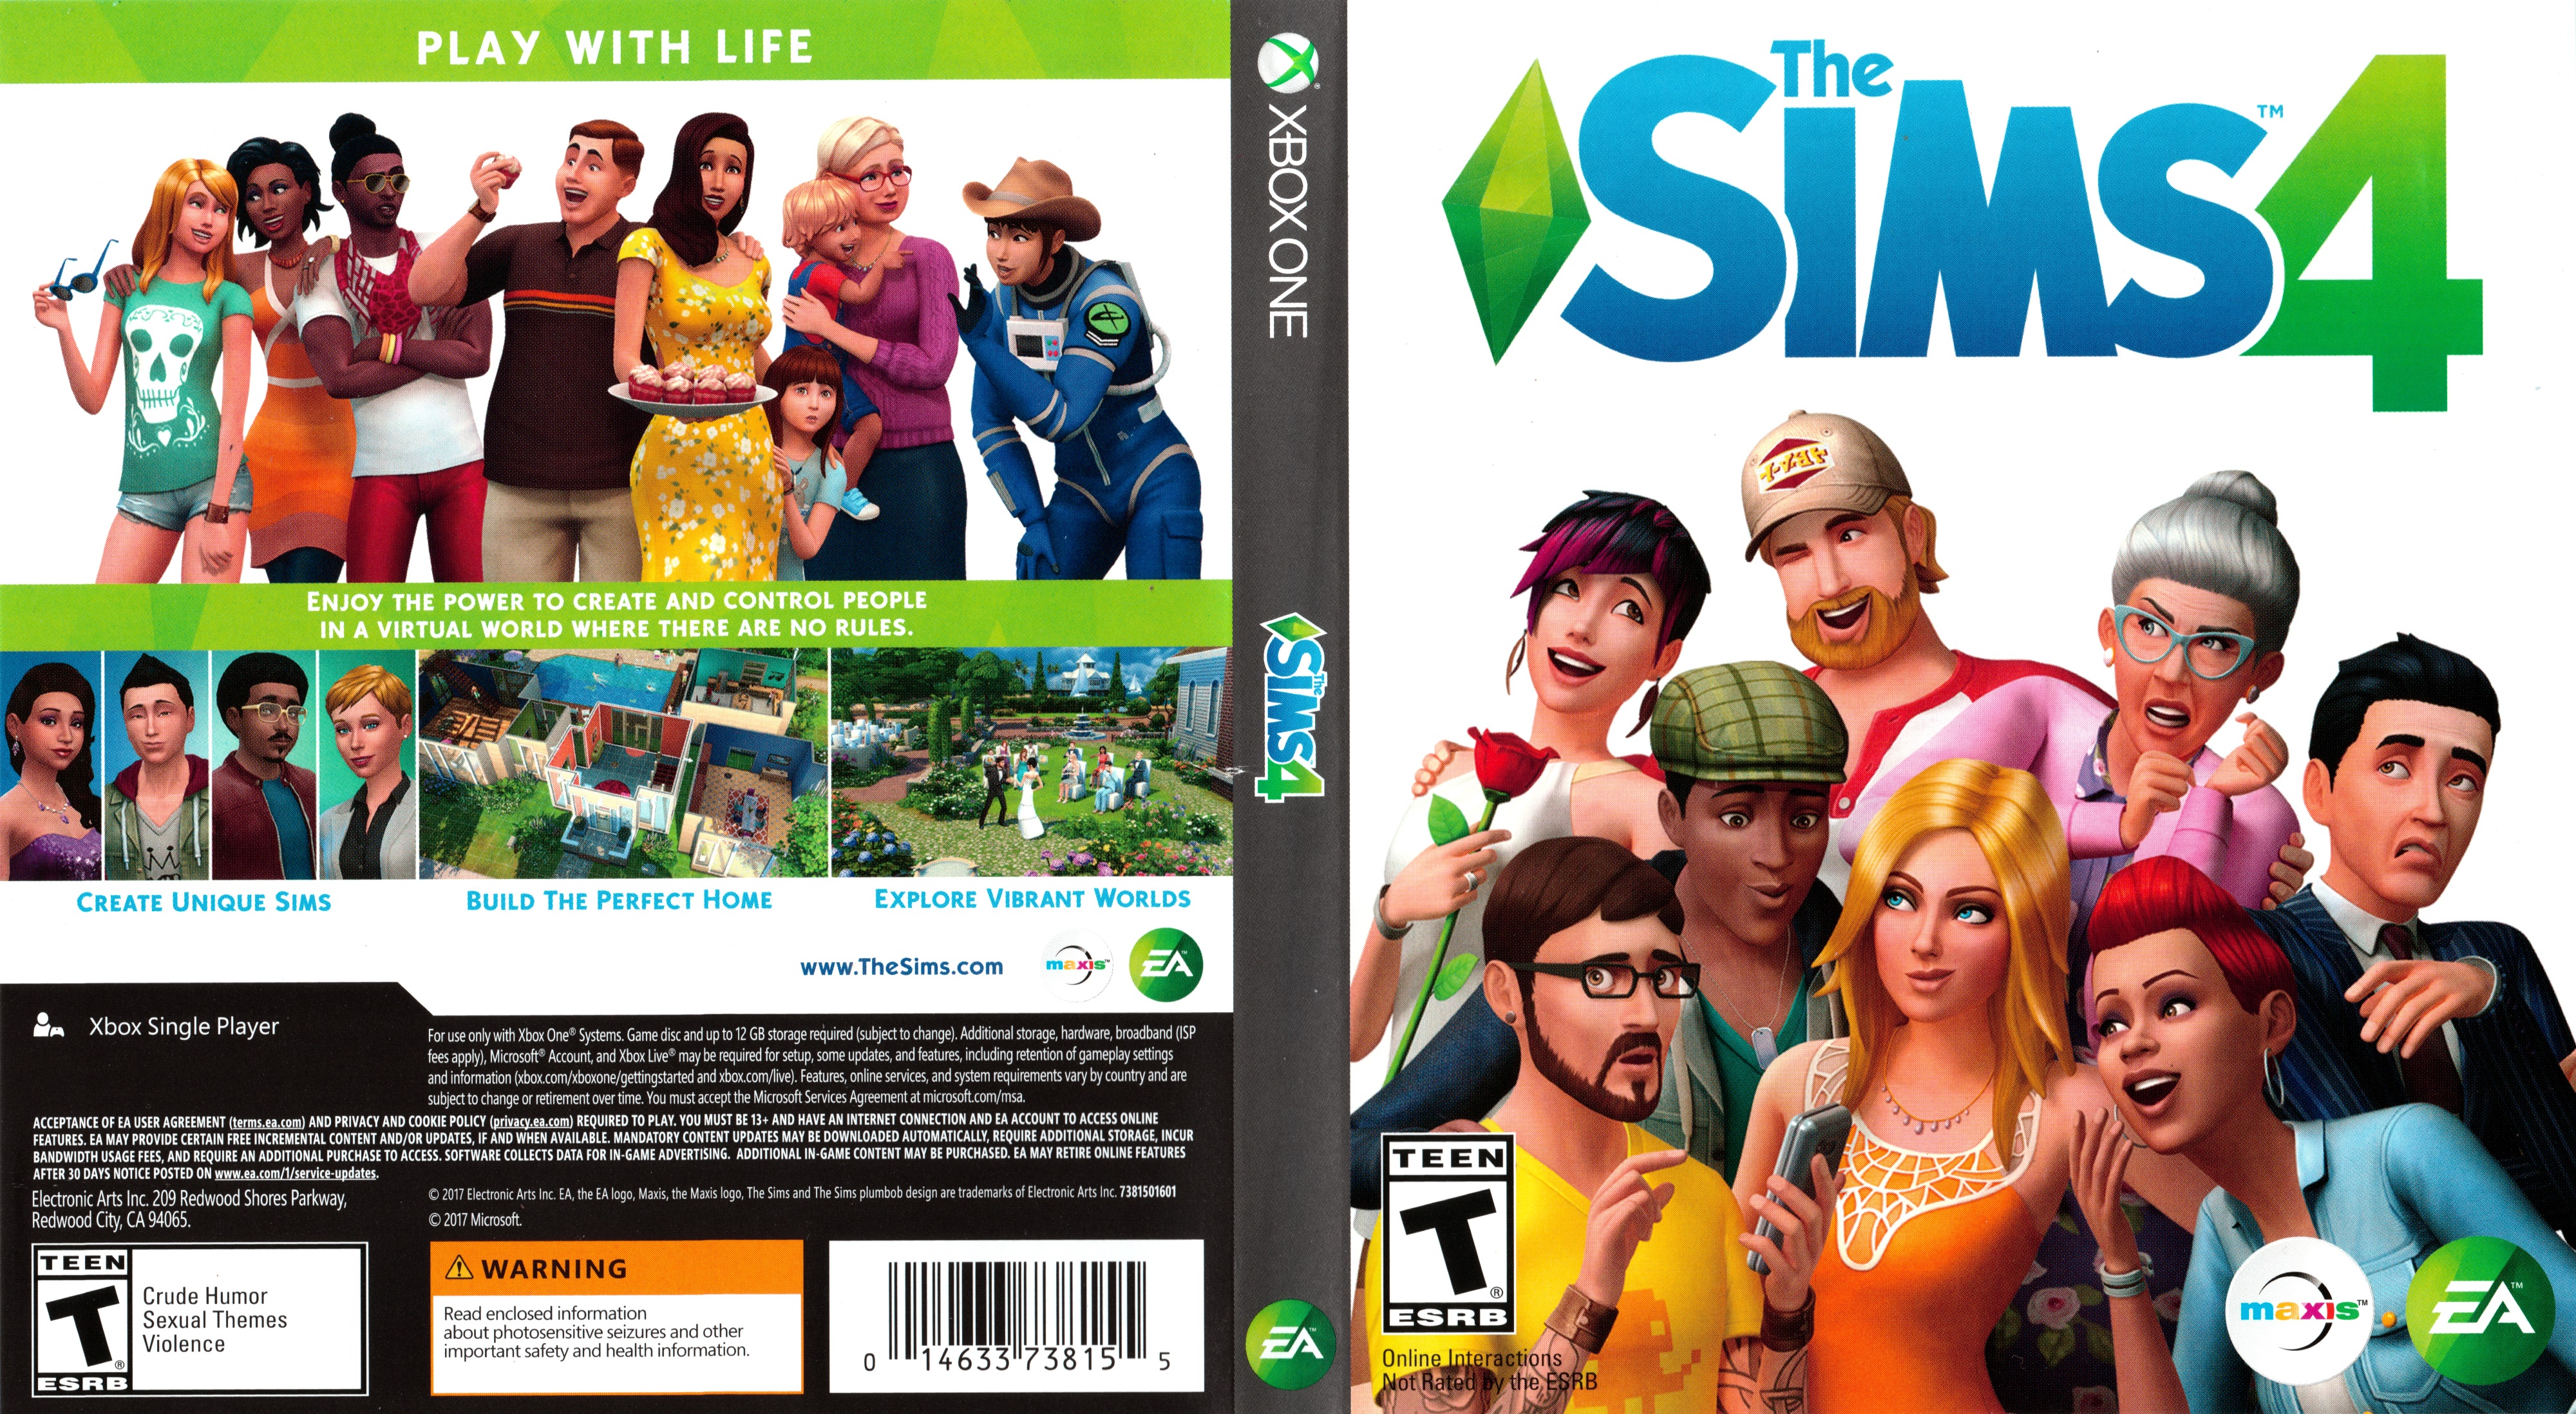 Sims 4 (Xbox One) Box-art by dakotaatokad on DeviantArt